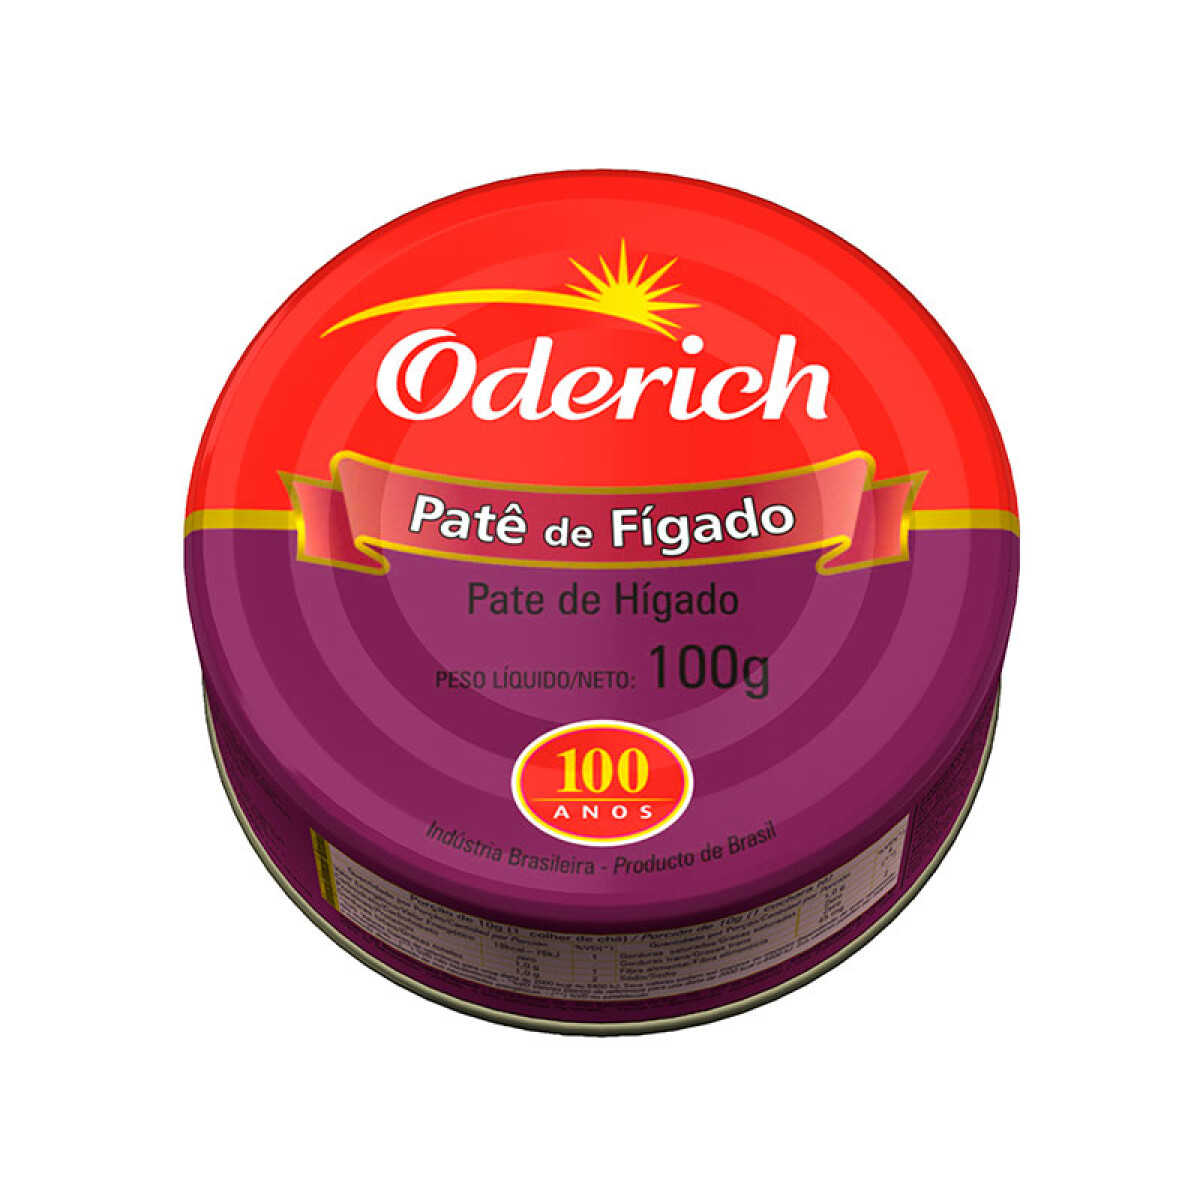 Paté ODERICH 100g - Higado 